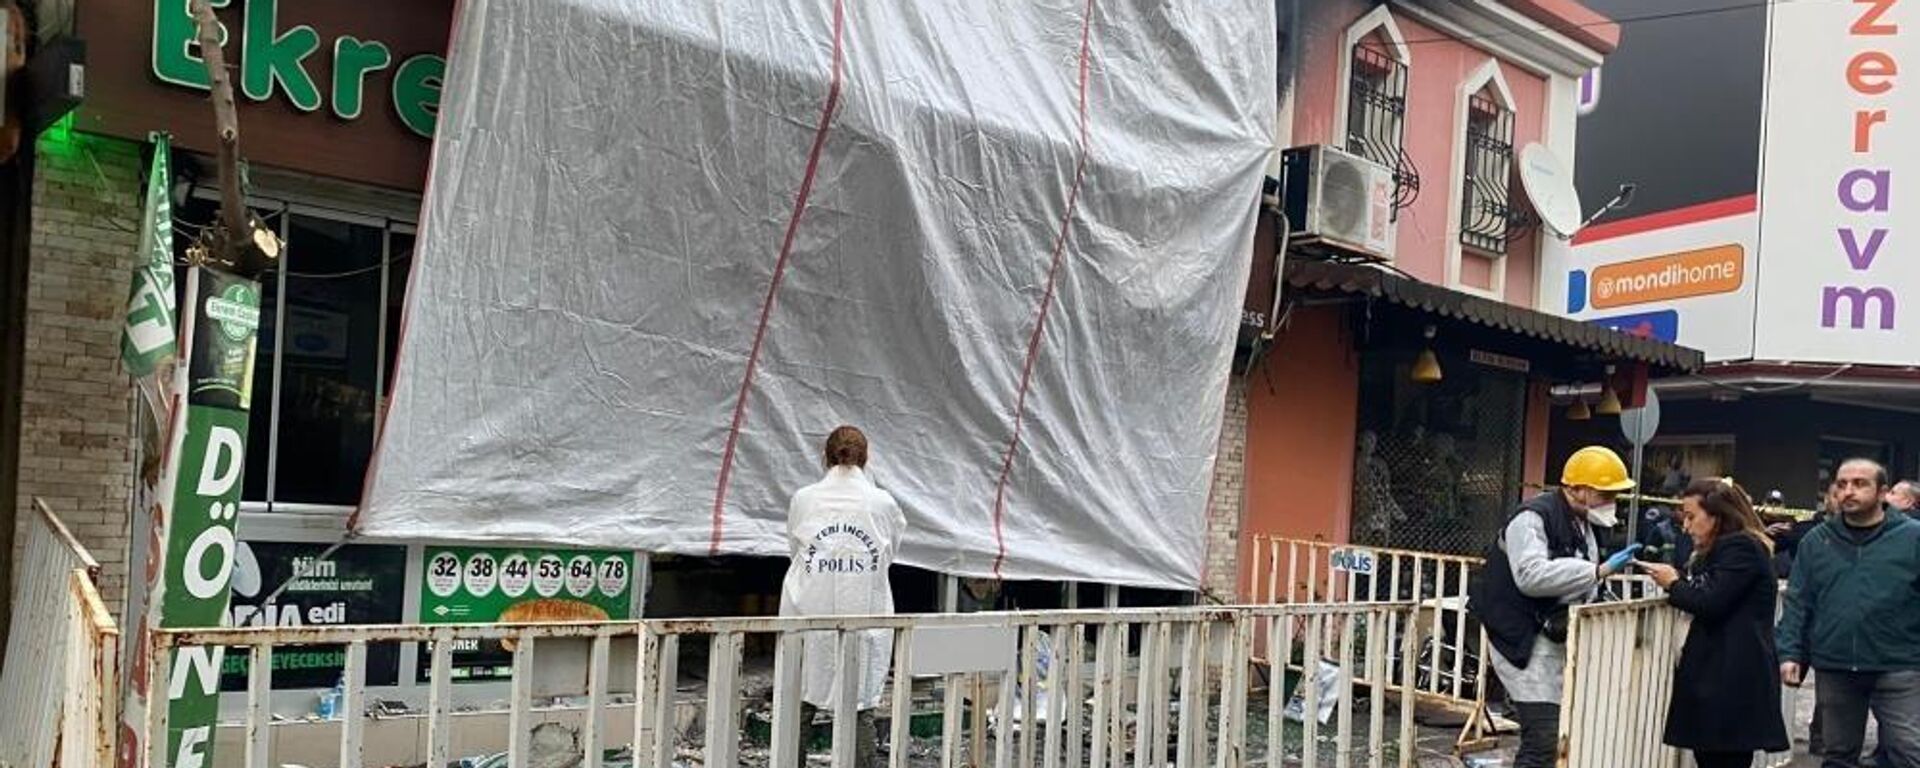 Aydın Nazilli'deki bir restoranda 7 kişinin ölümü 5 kişinin yaralandığı patlamayla ilgili bir şüpheli daha tutuklandı. Soruşturma kapsamında tutuklanan şüpheli sayısı 4'e yükseldi. - Sputnik Türkiye, 1920, 01.01.2023